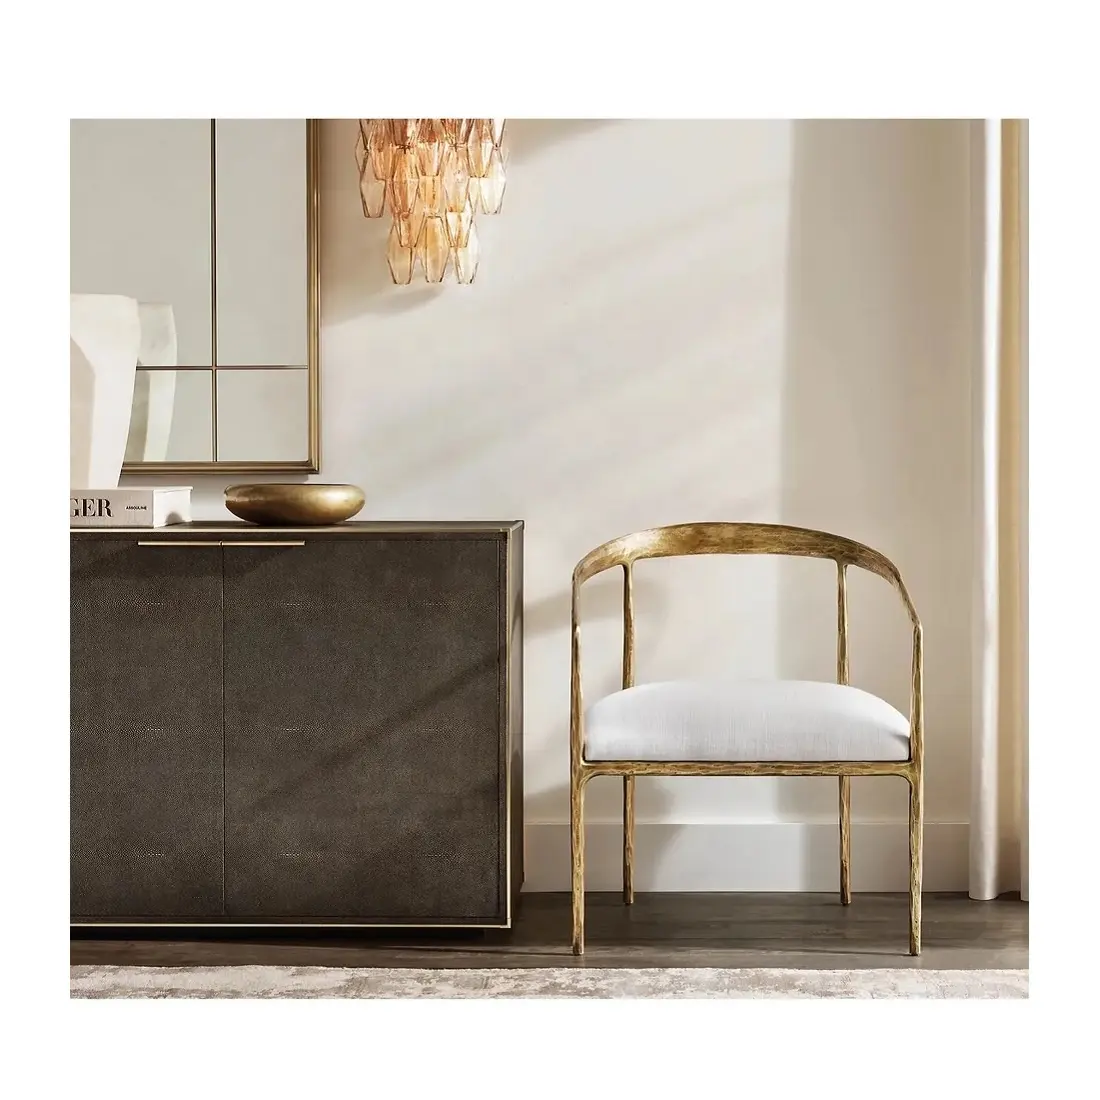 Chaise de salle à manger vintage thaddeus forgée à la main en métal massif courbé doré chaise de salon canapé simple